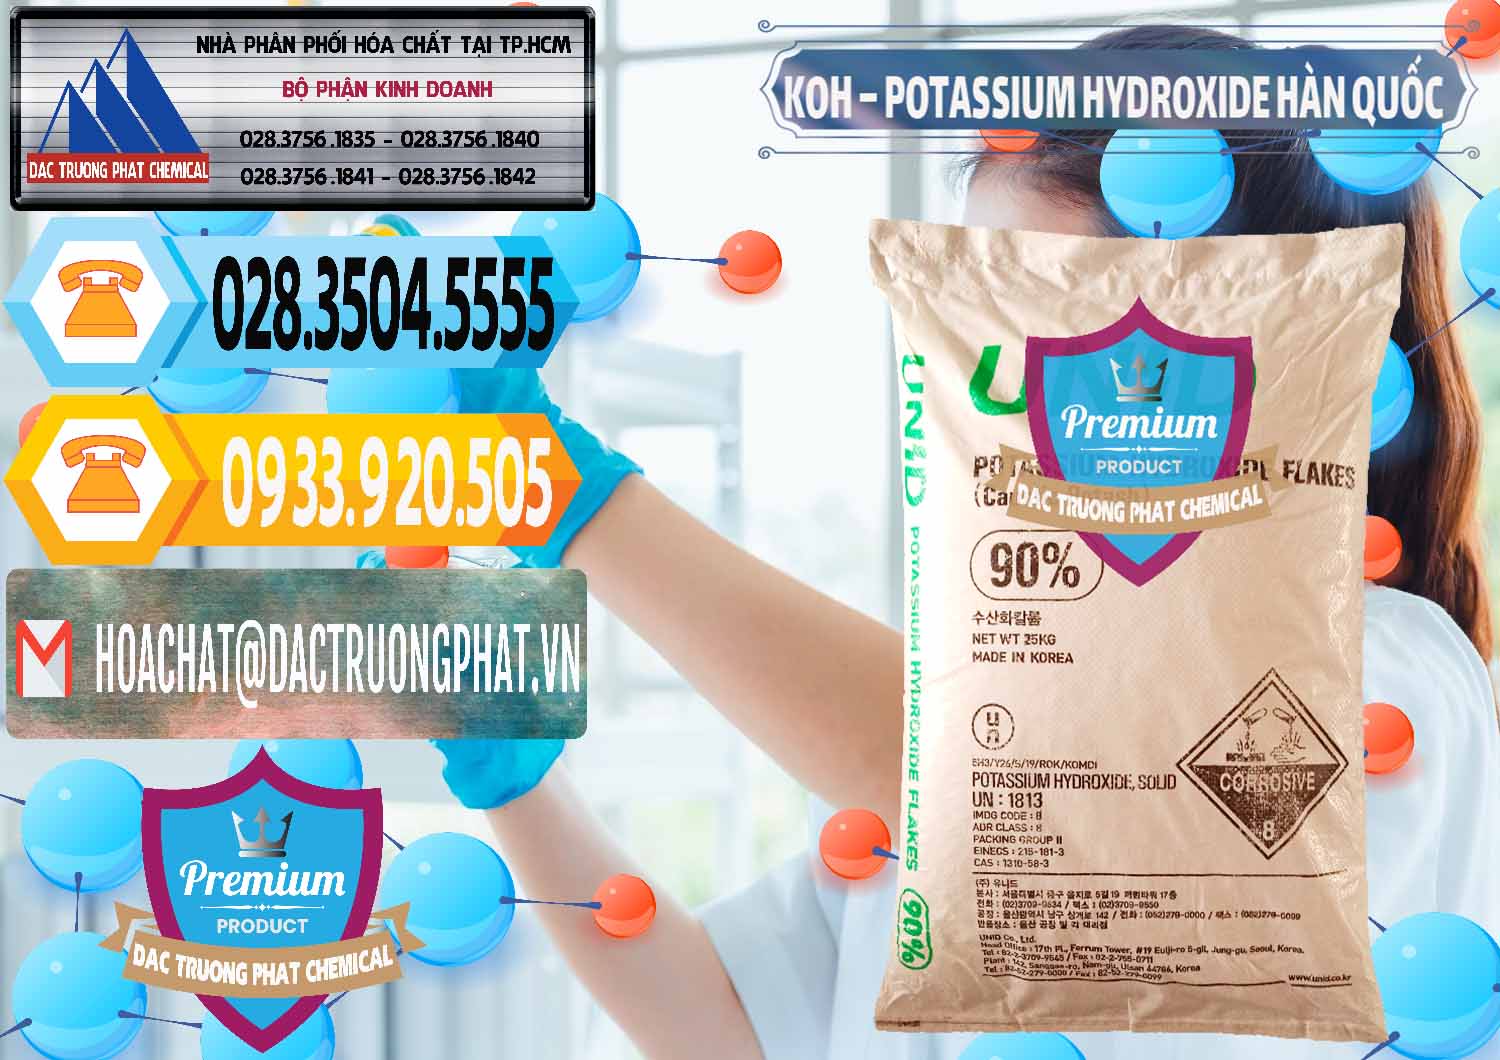 Công ty chuyên nhập khẩu _ bán KOH ( 90%) – Potassium Hydroxide Unid Hàn Quốc Korea - 0090 - Cty phân phối ( cung cấp ) hóa chất tại TP.HCM - hoachattayrua.net